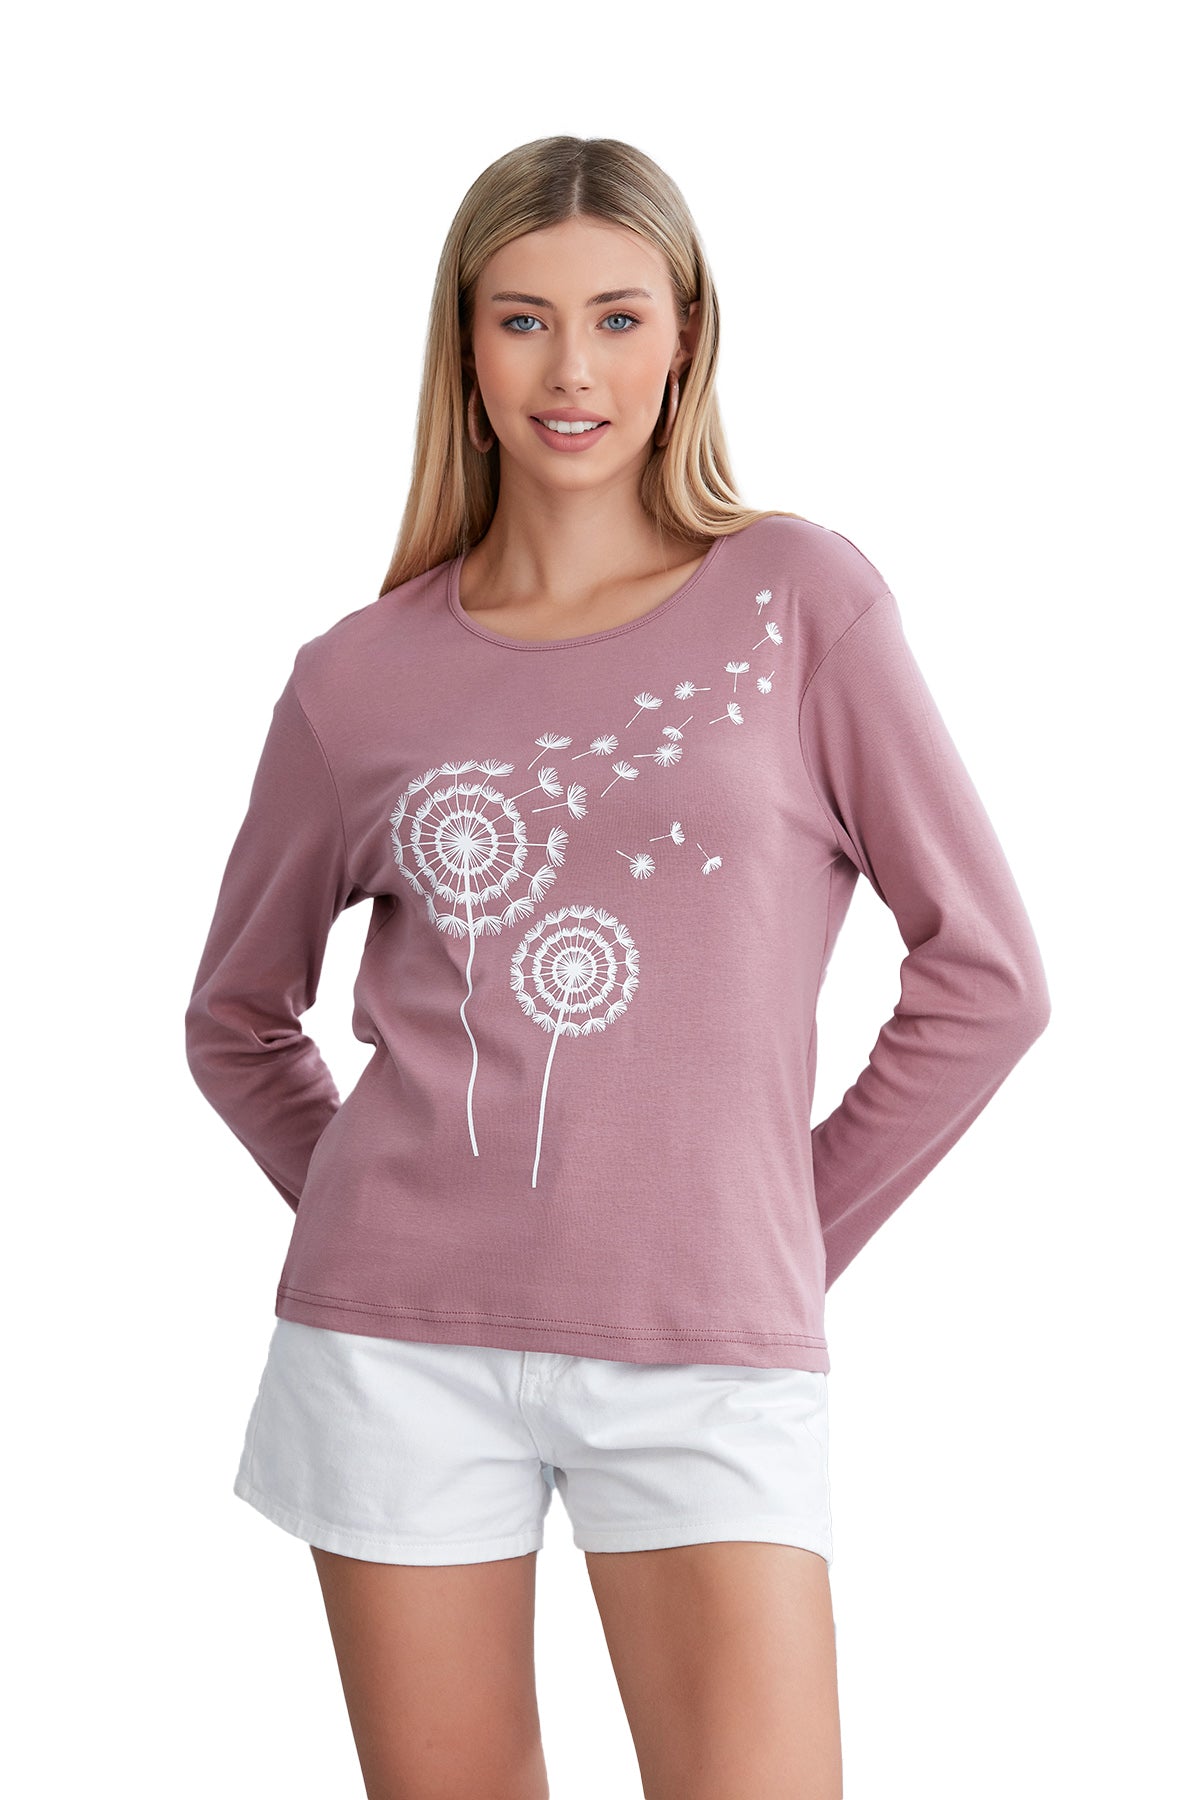 Long Sleeve Scoop Neck T-Shirt for Women in Dandelion Print - Wear Sierra